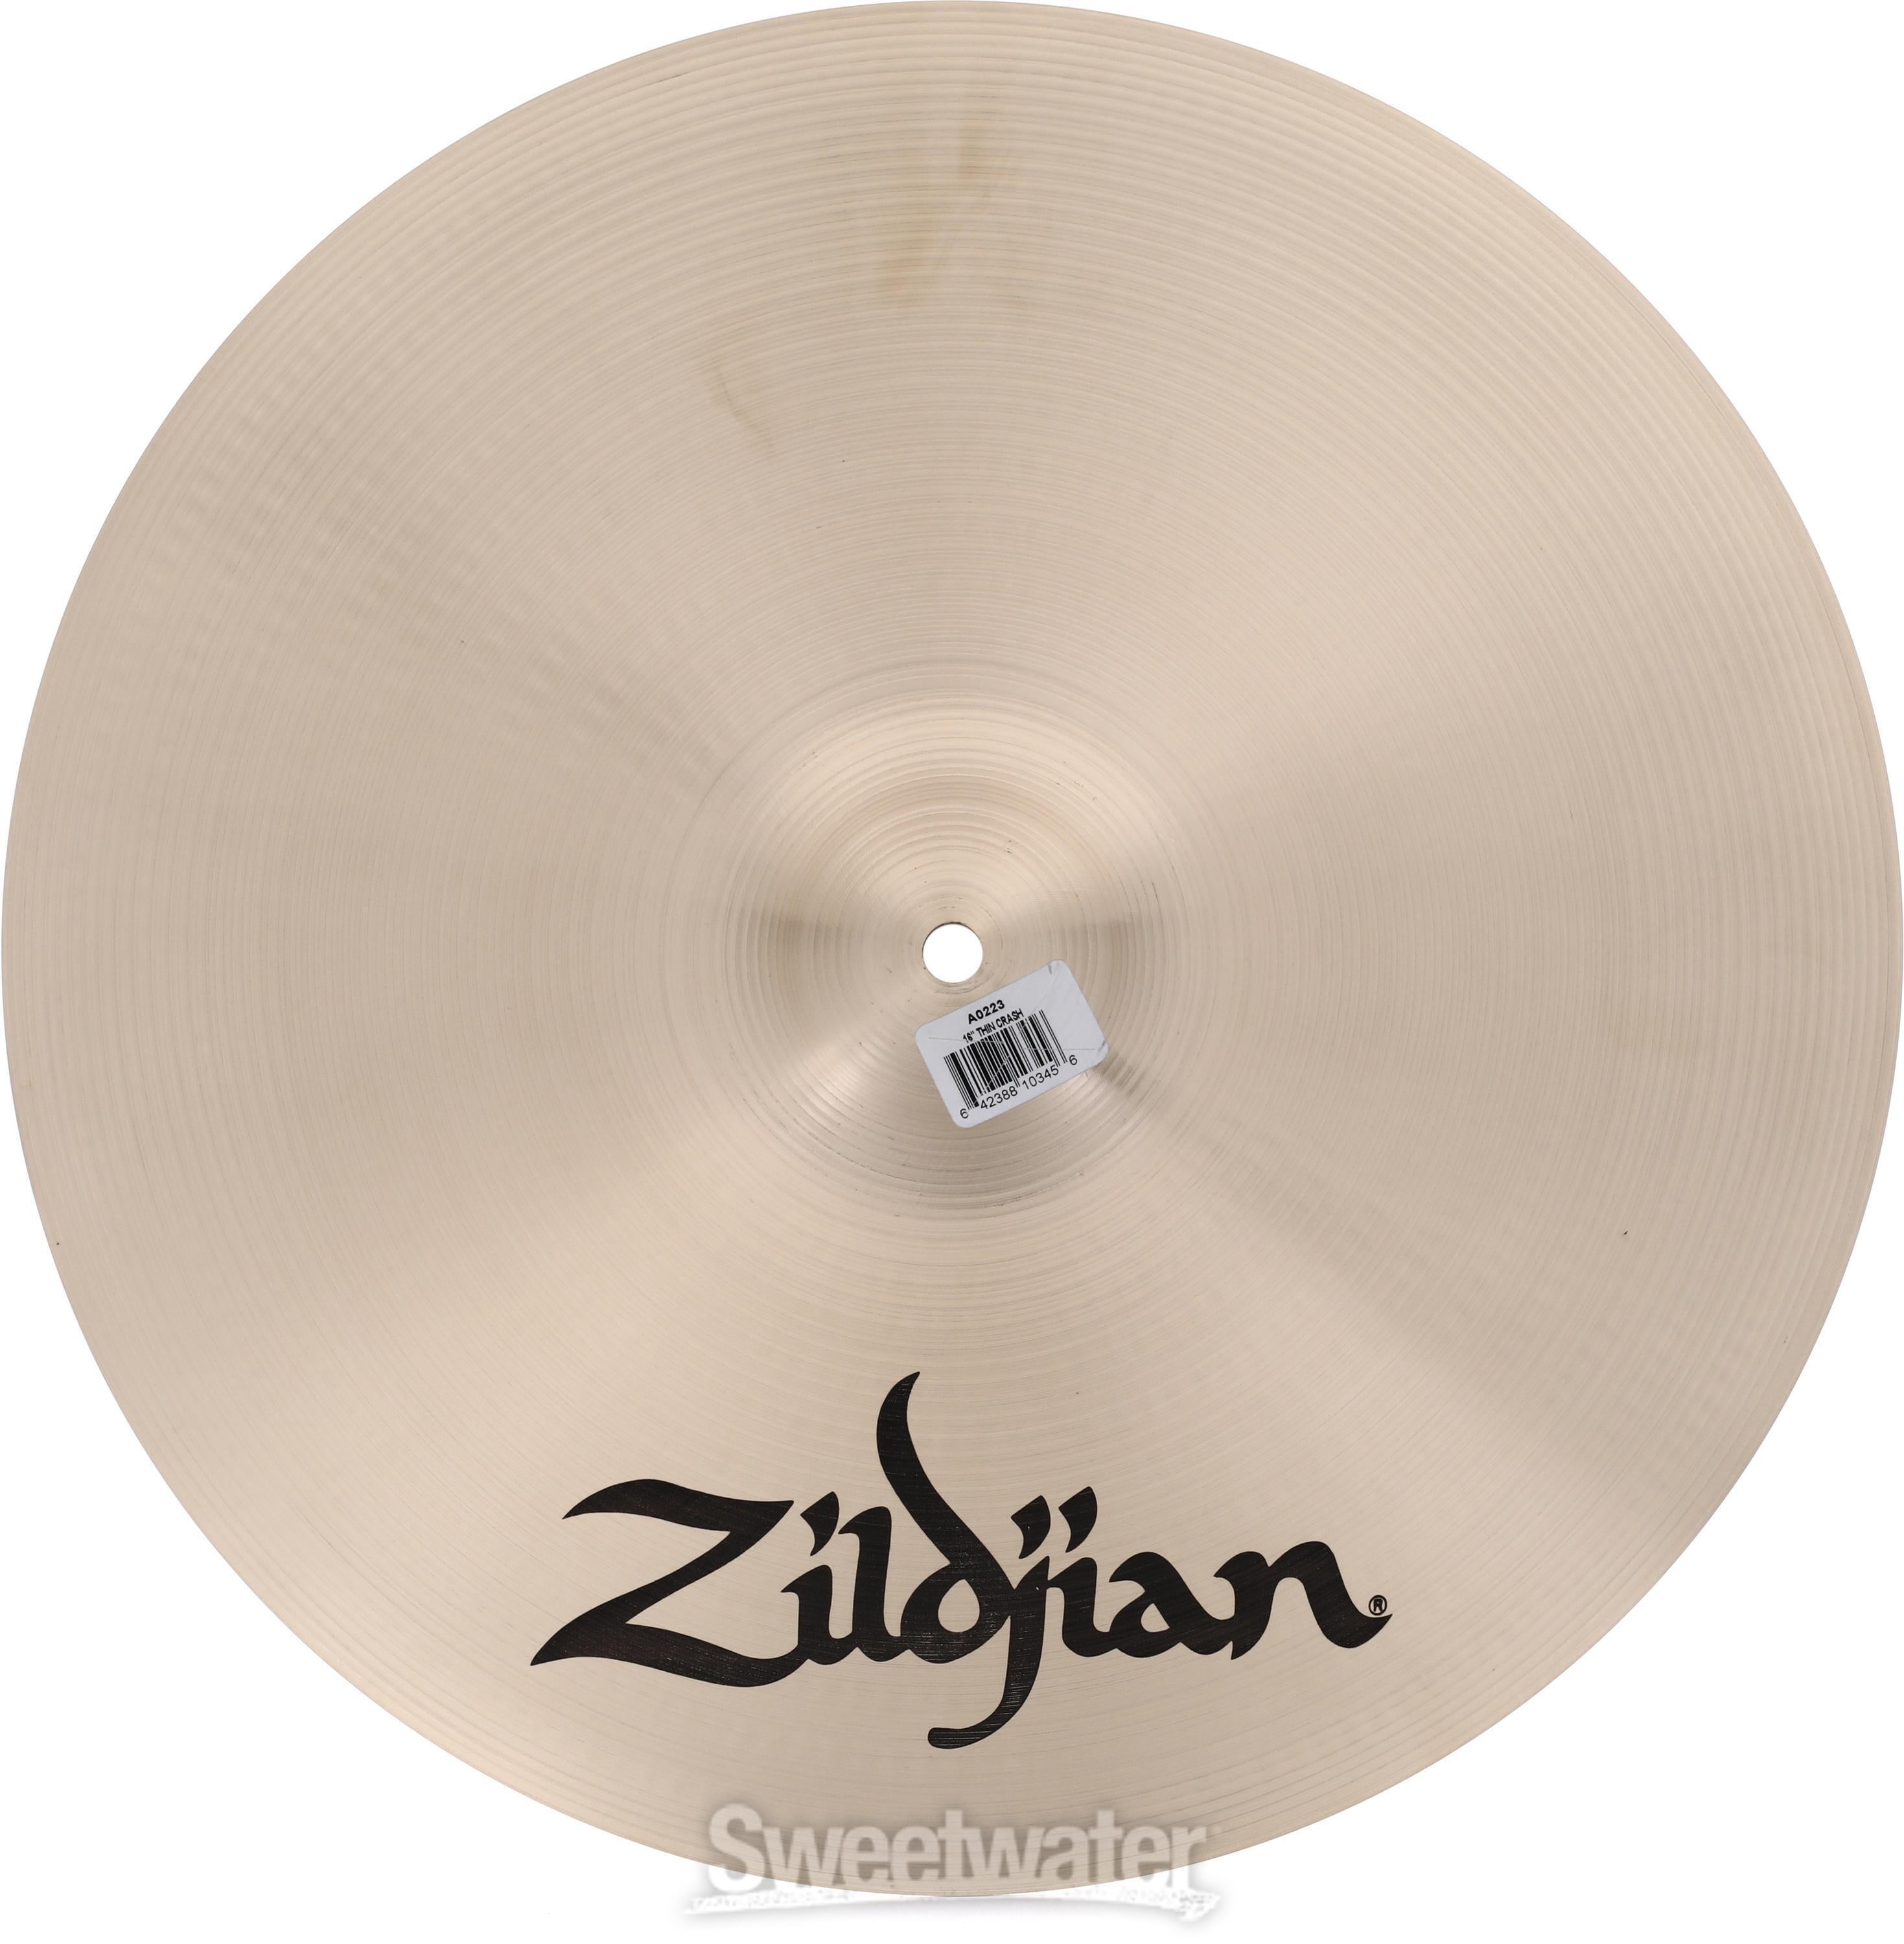 Zildjian 16 inch A Zildjian Thin Crash Cymbal | Sweetwater